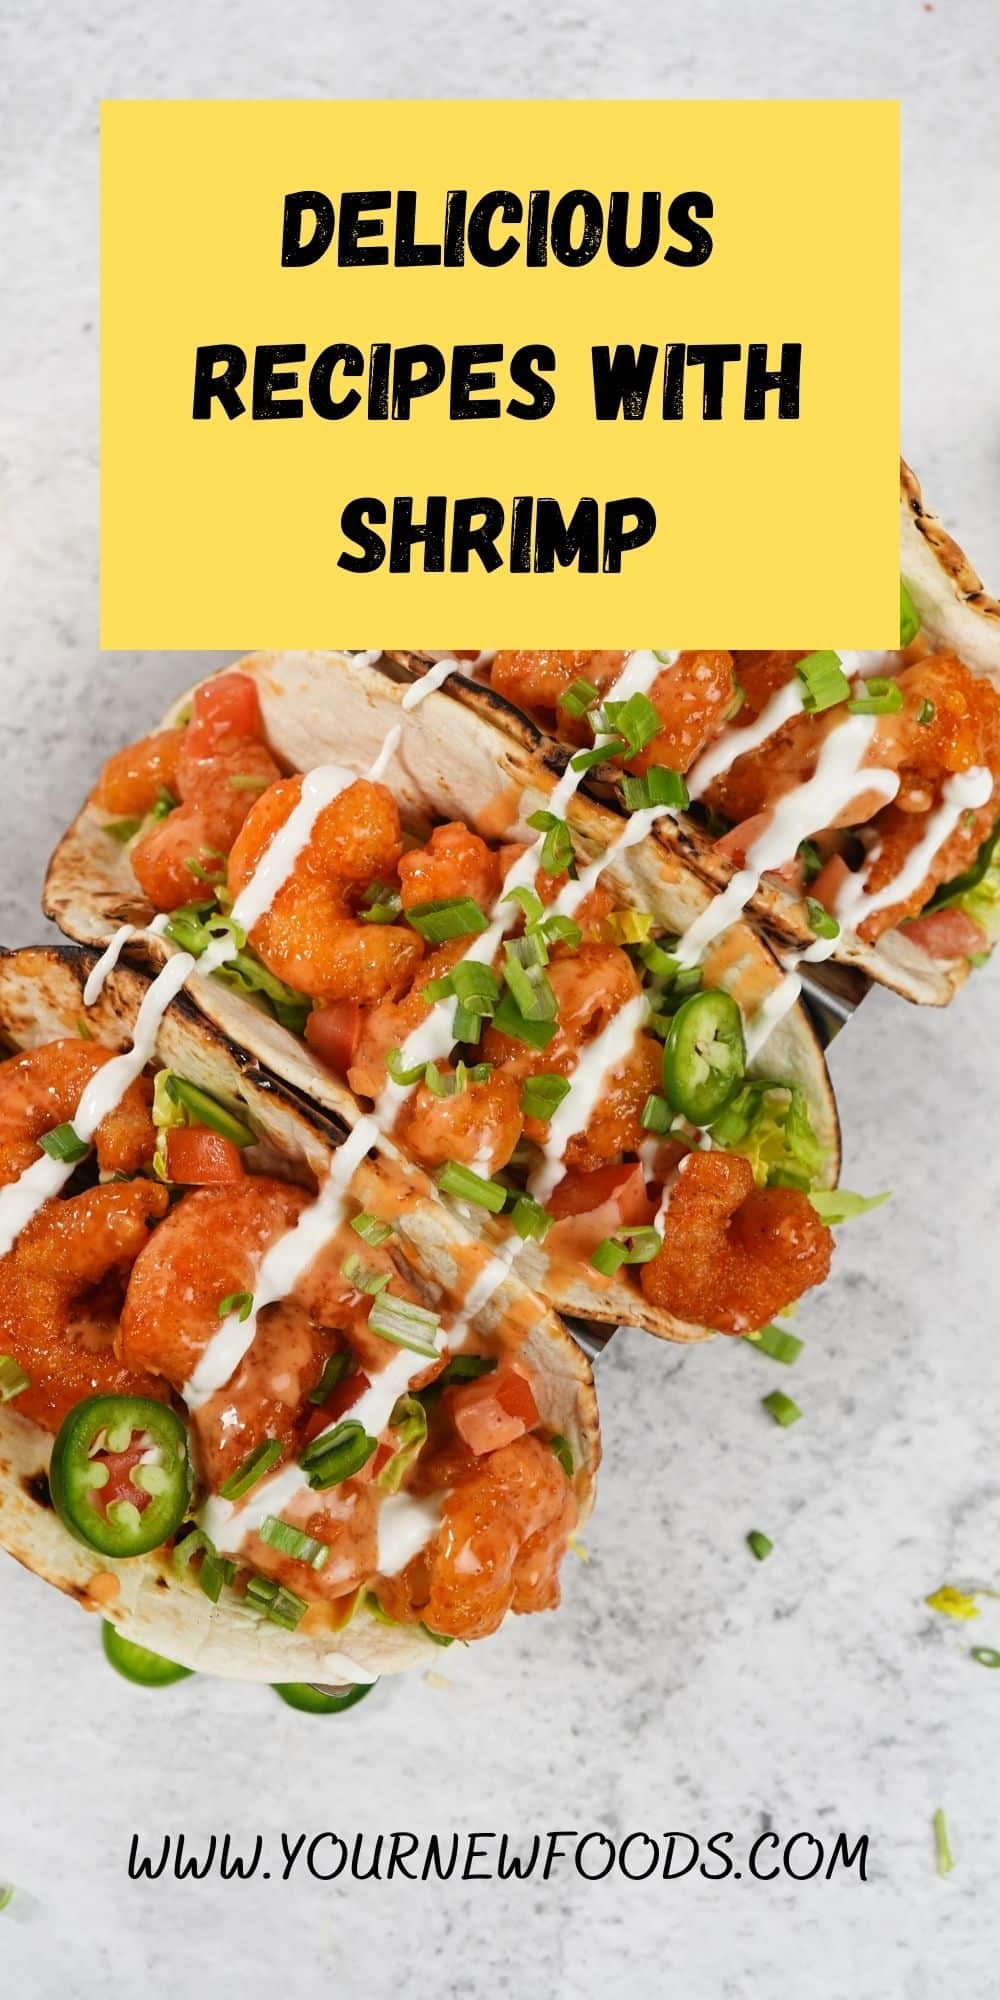 bang bang shrimp tacos